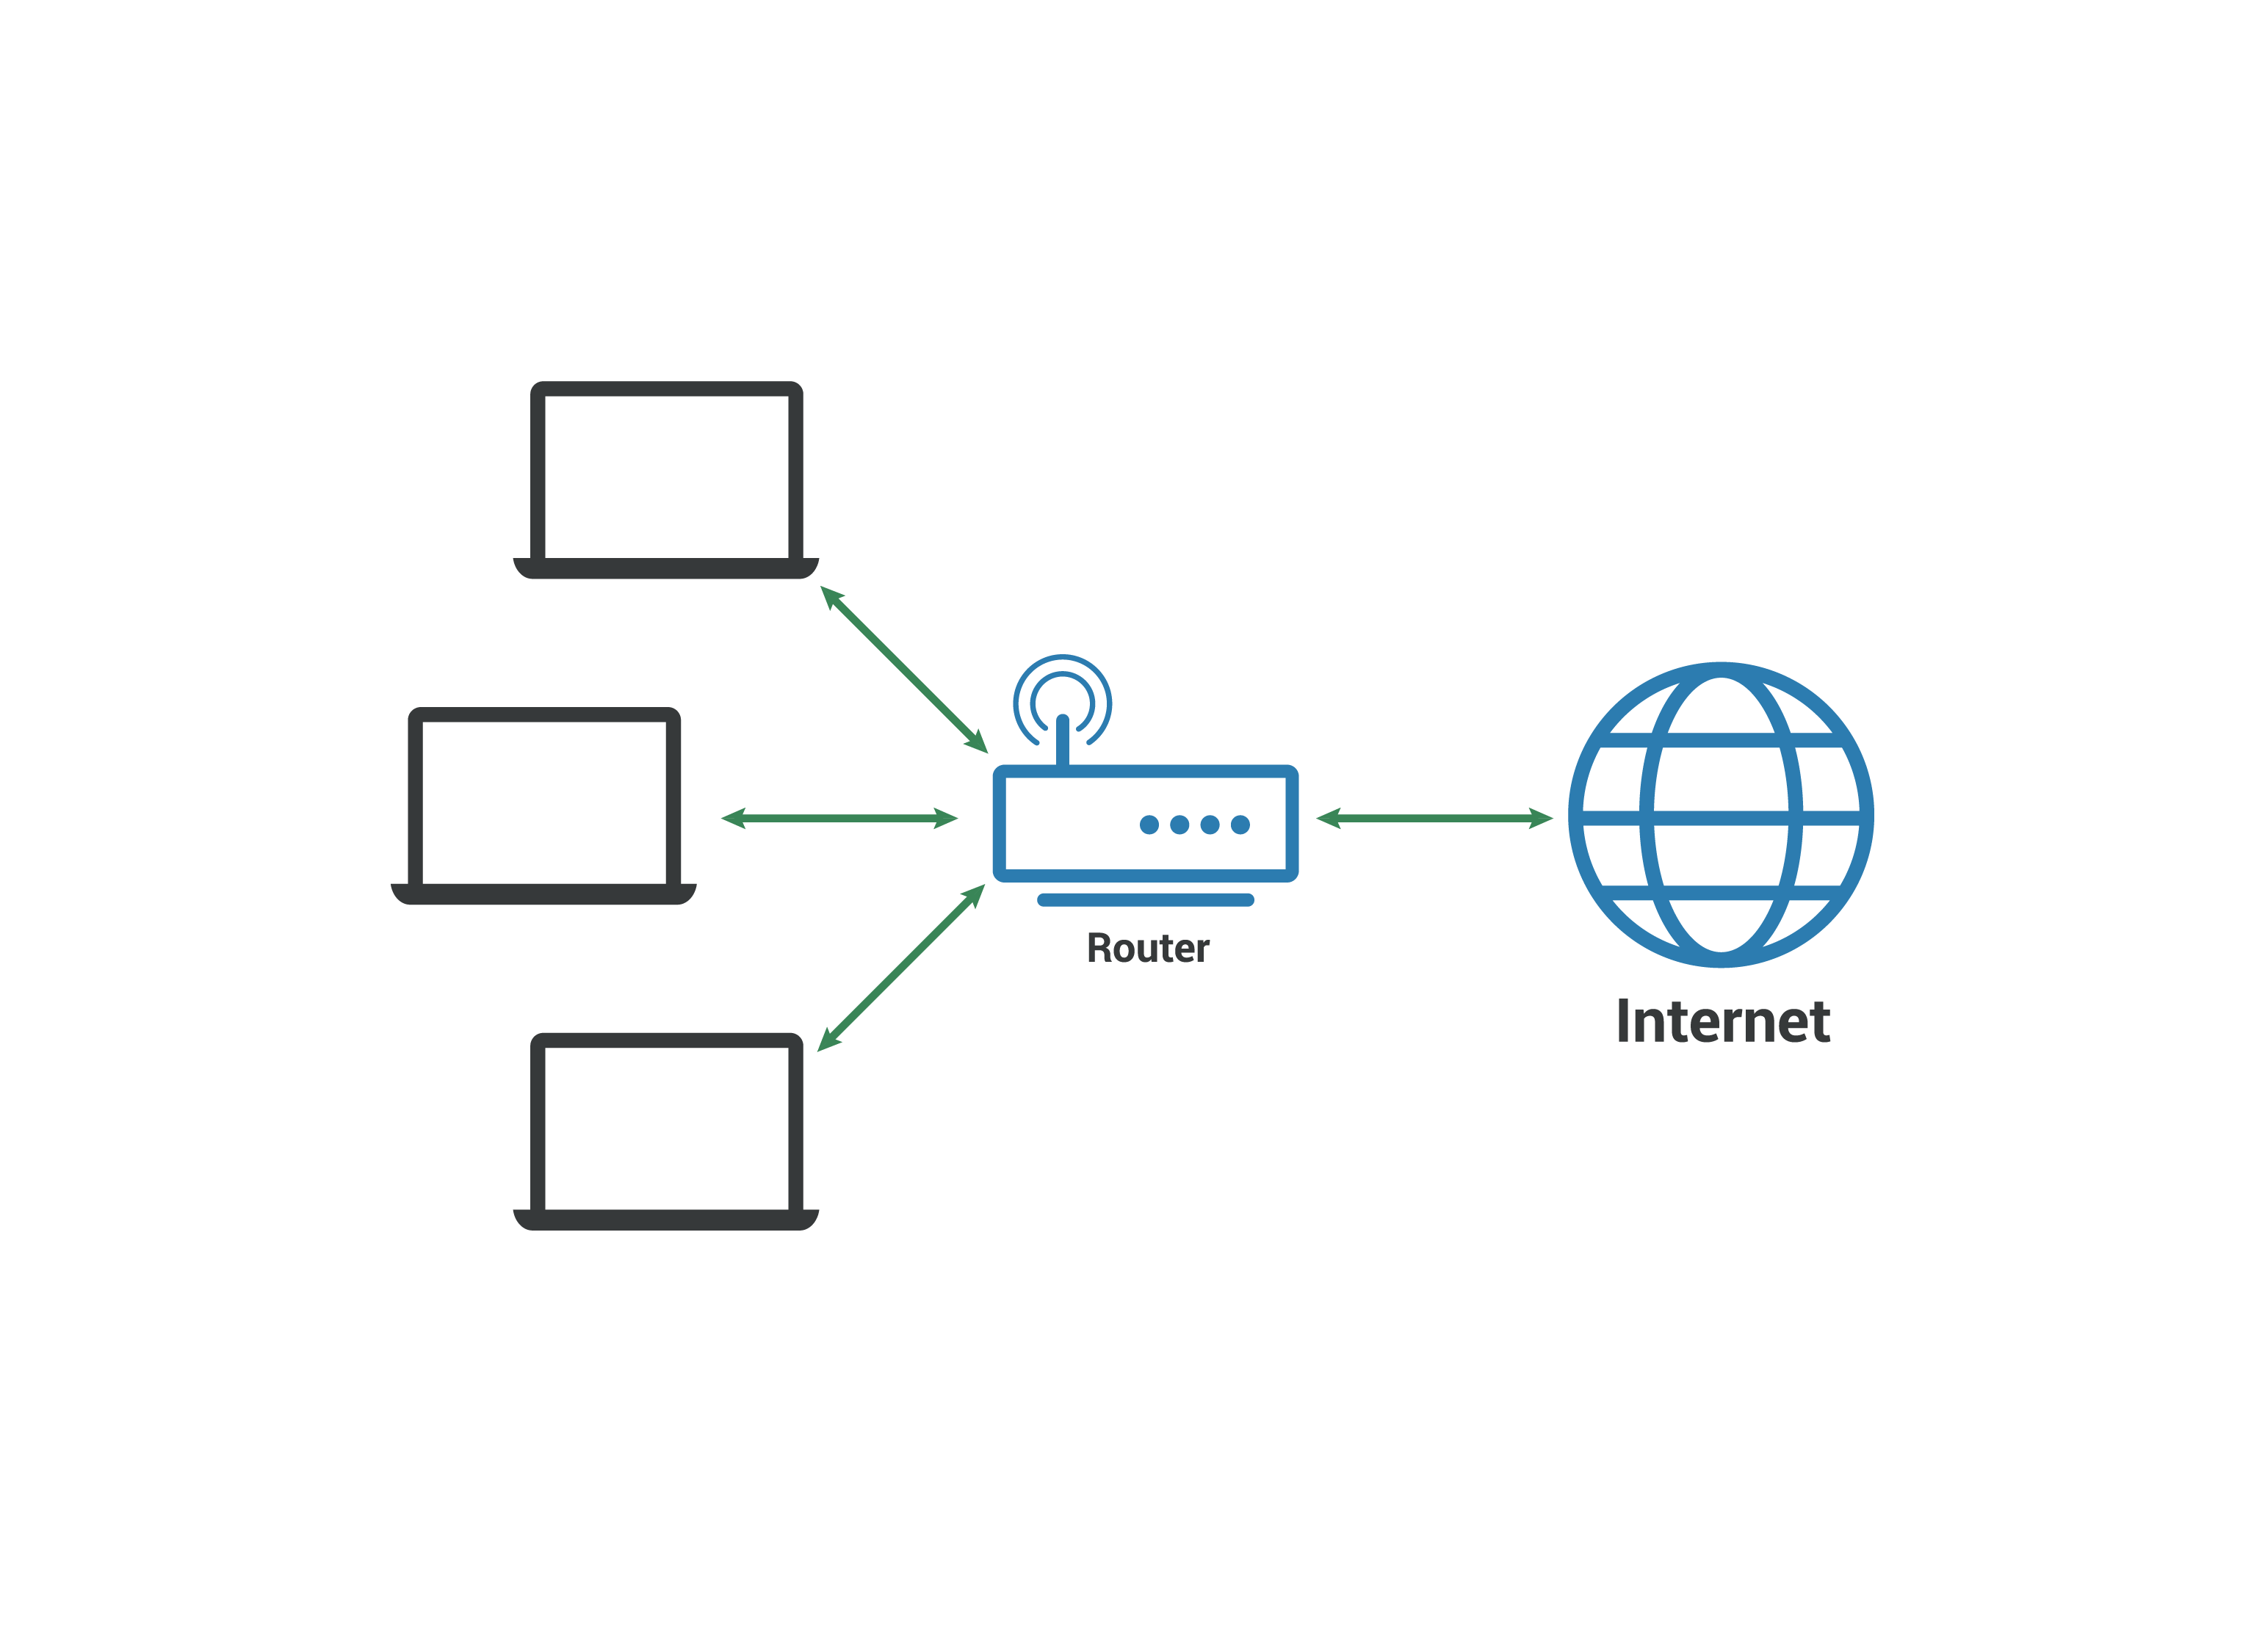 區域網路 LAN：電腦連接到路由器，路由器連接到網際網路